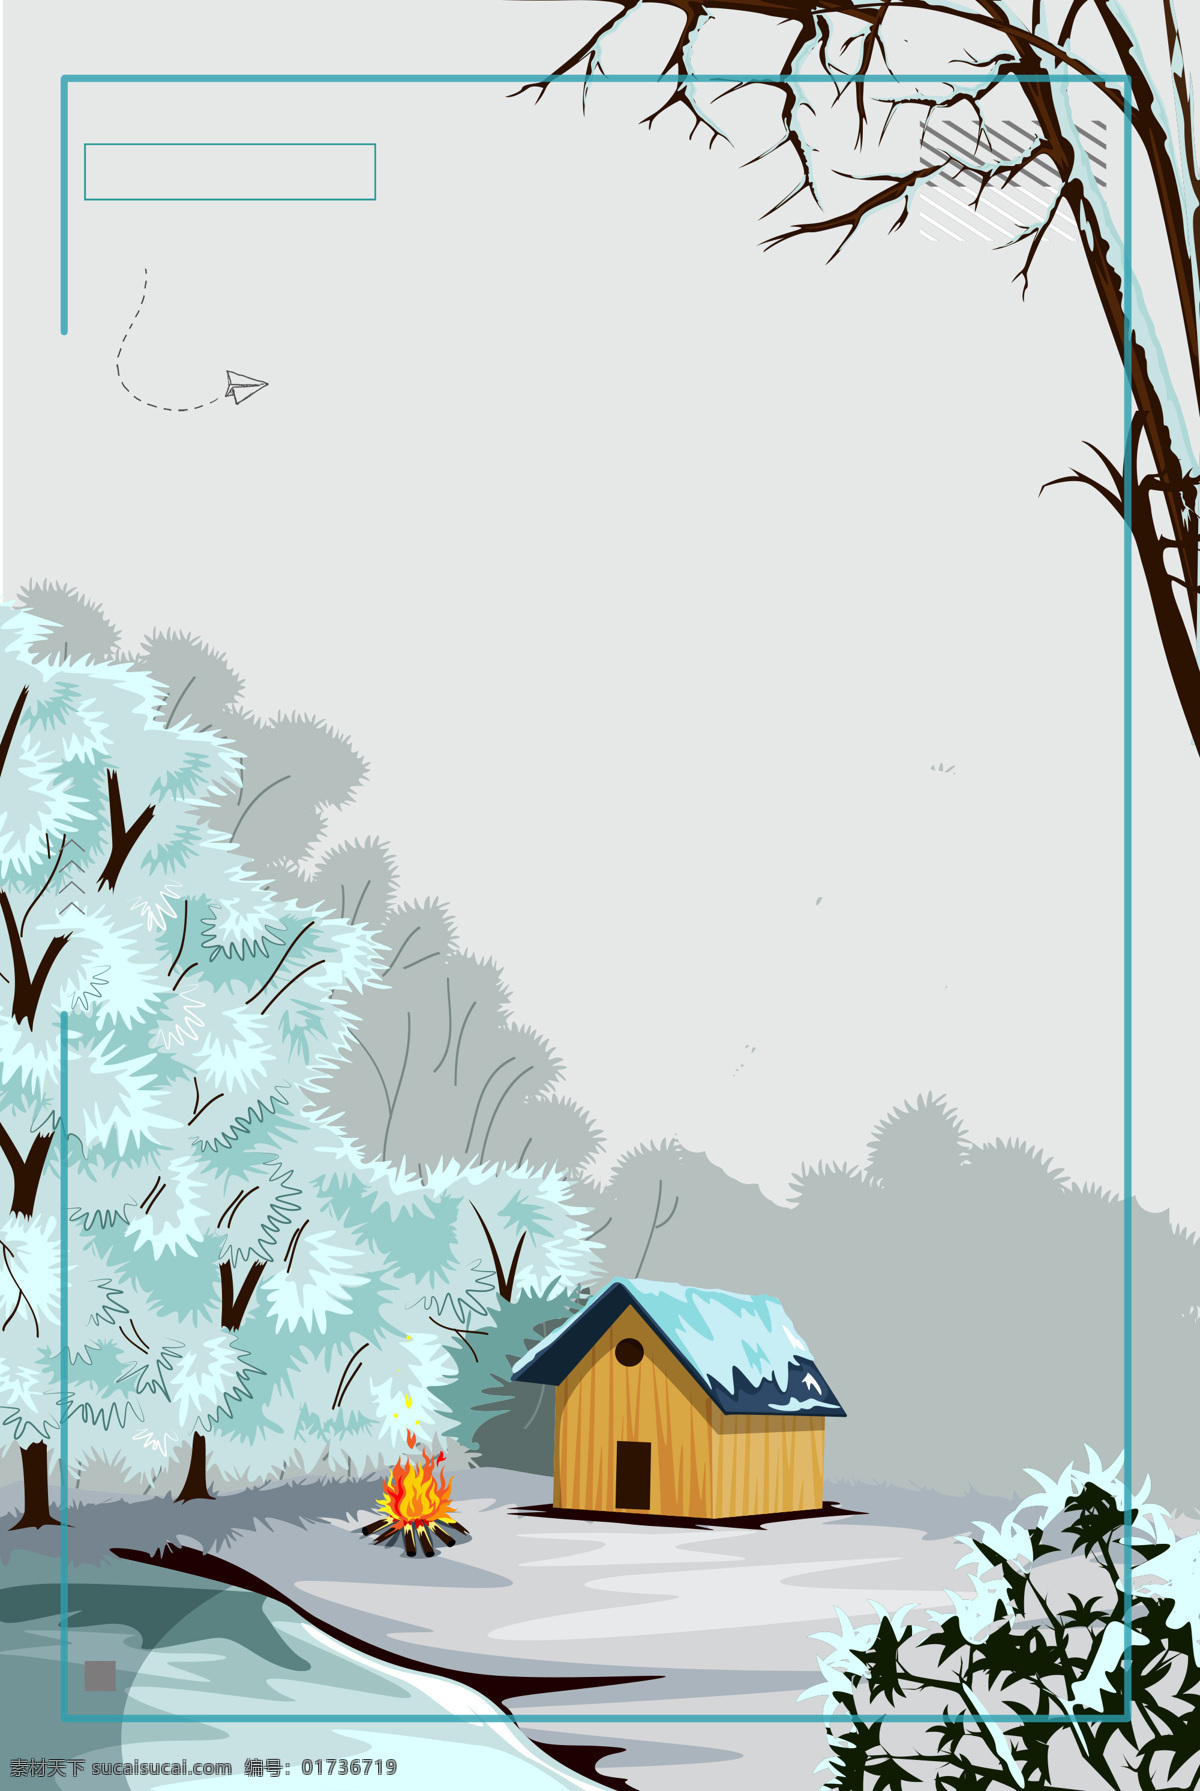 浪漫 冬季 森林 背景 边框 广告 湖泊 木屋 树林 线条 小清新 雪花